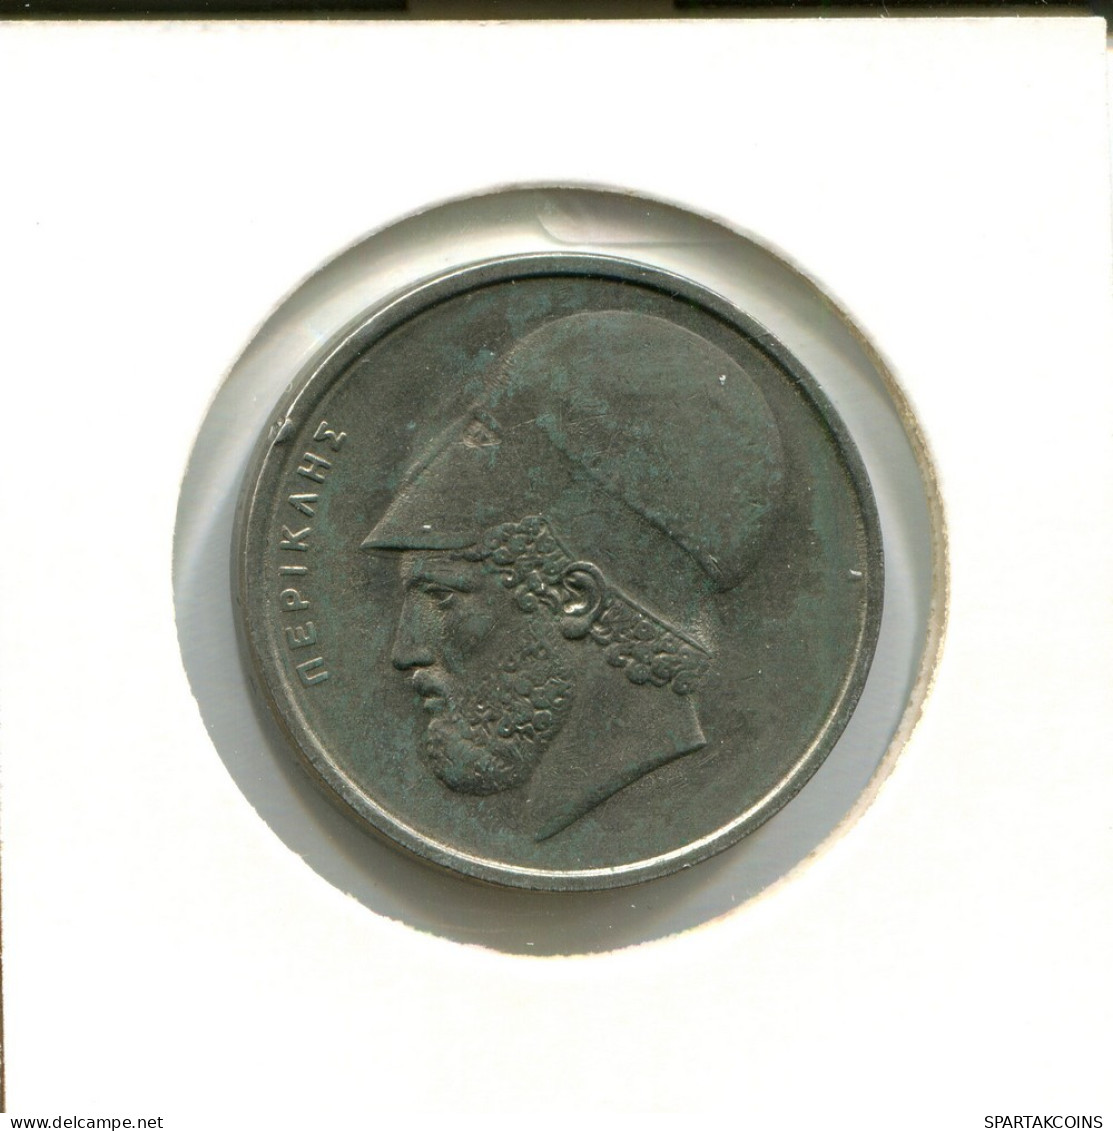 20 DRACHMES 1978 GRECIA GREECE Moneda #AS799.E.A - Griechenland